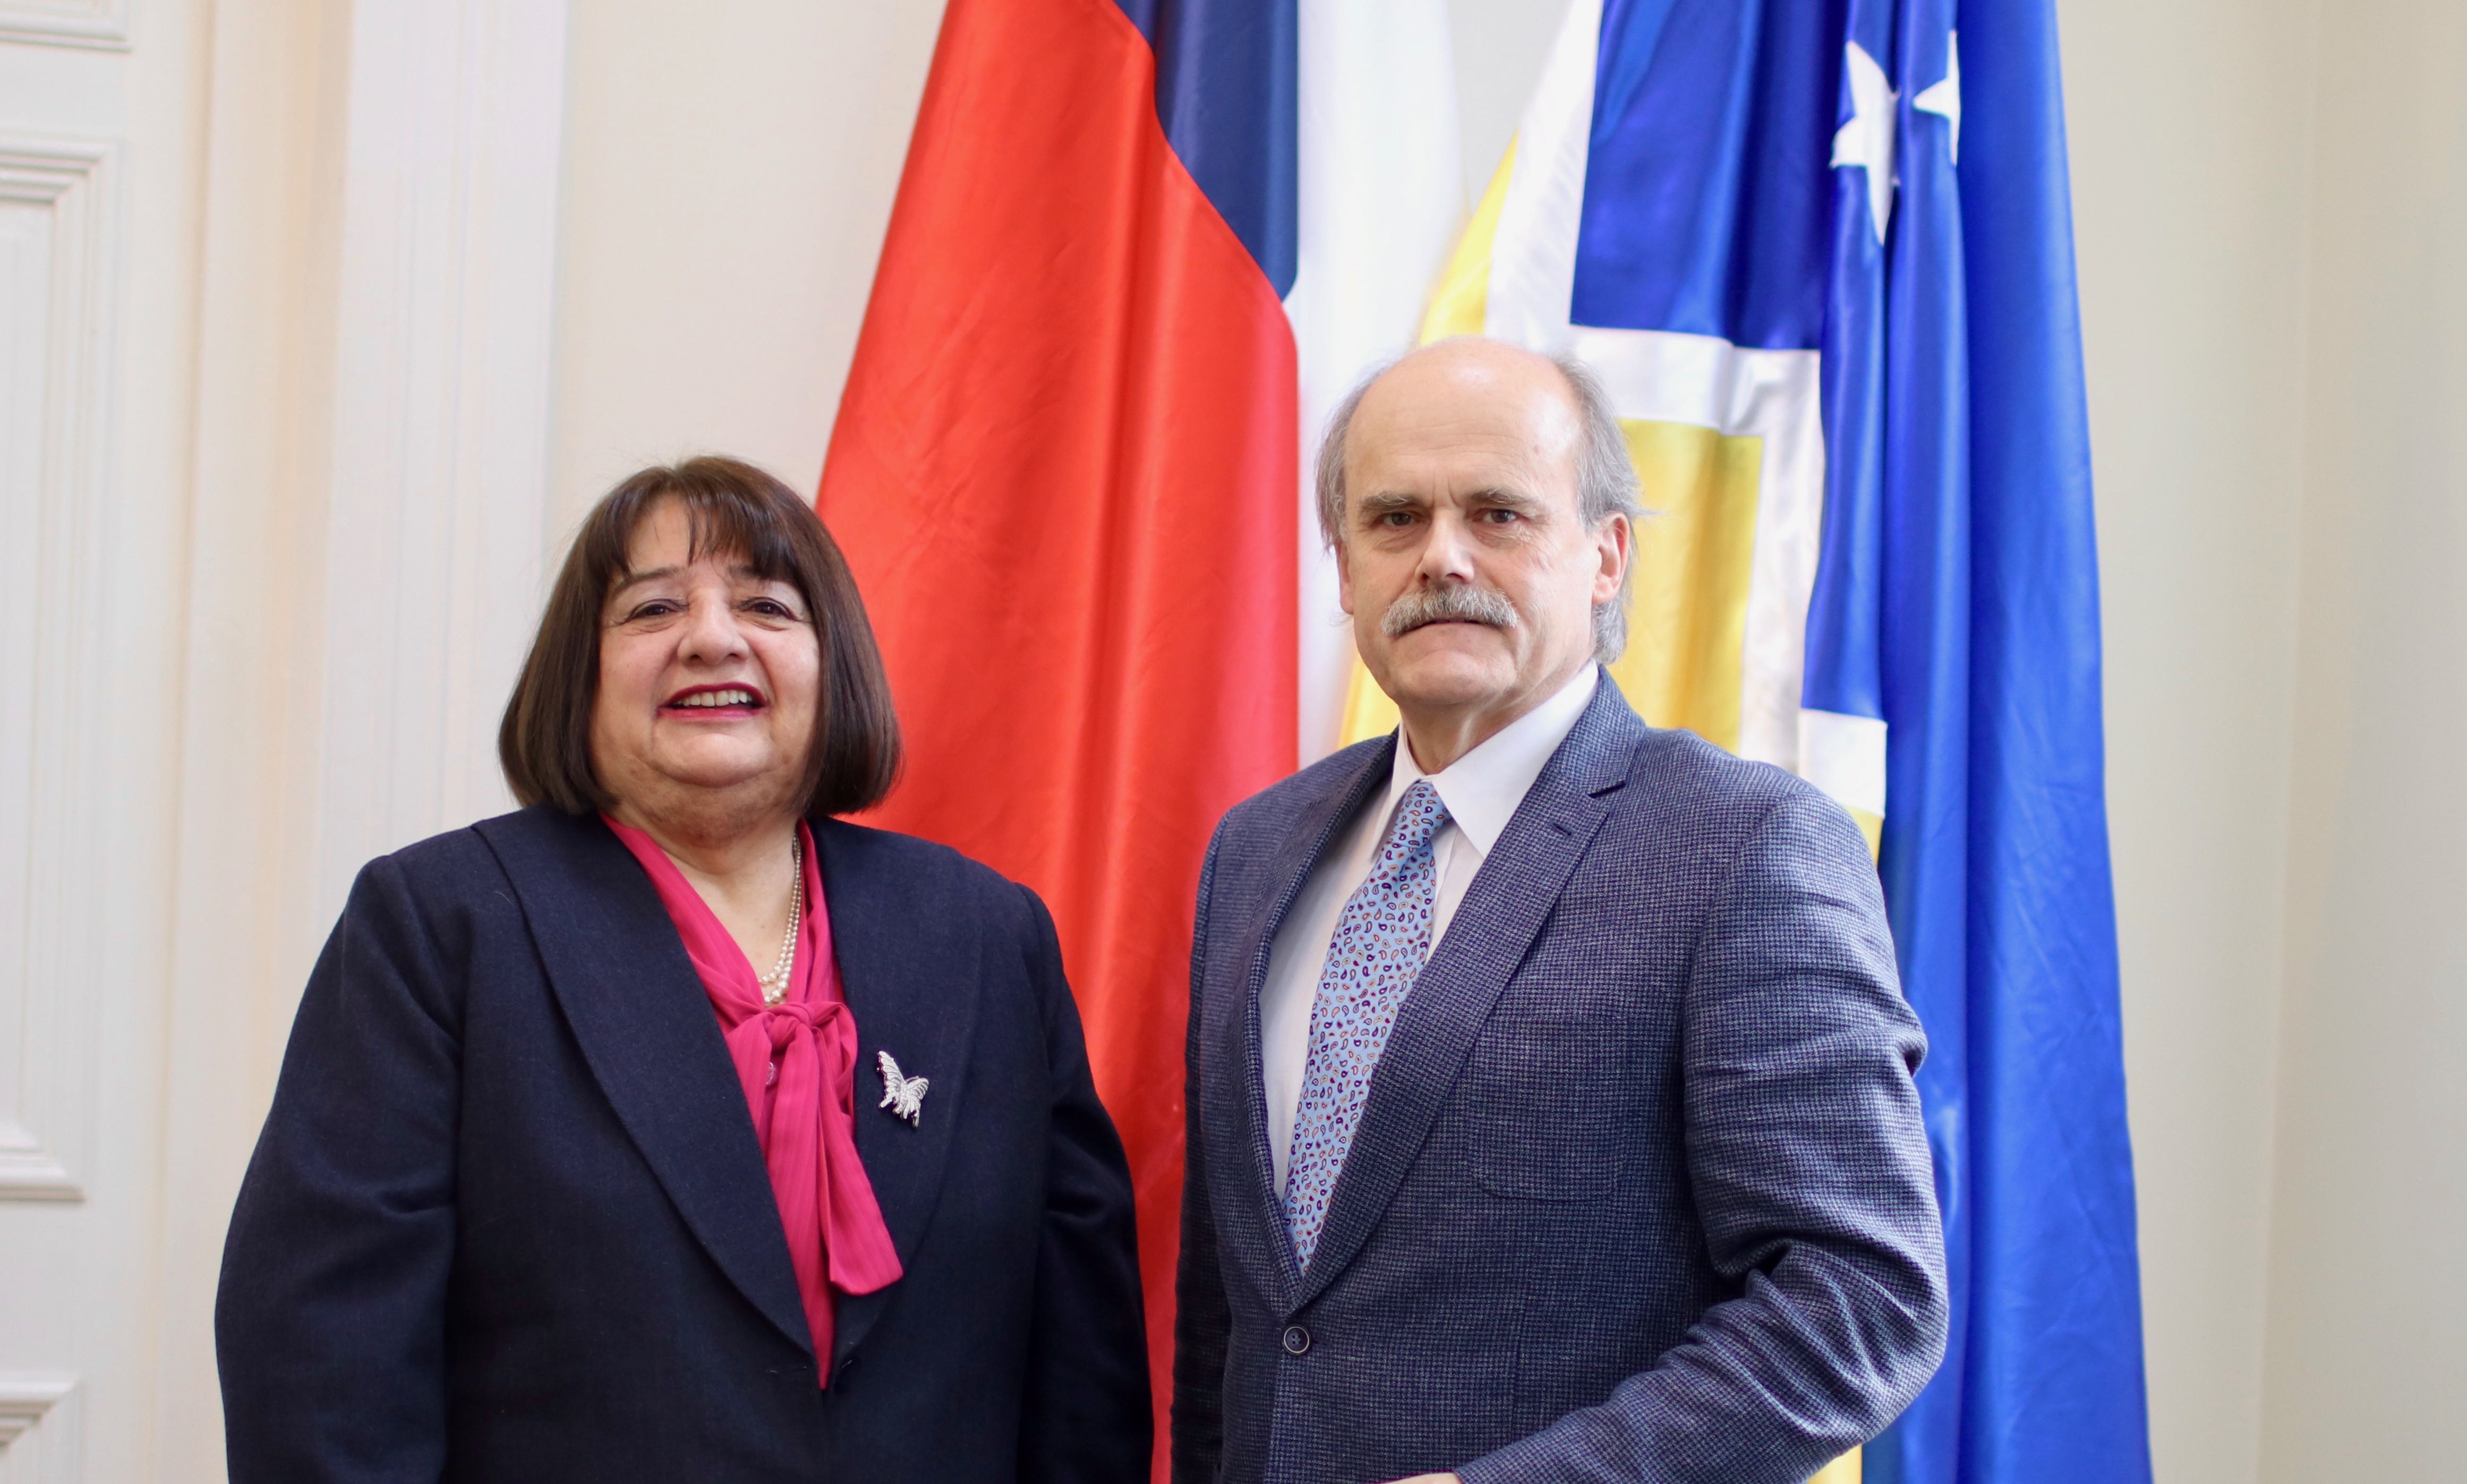 Presidenta de la Corte de Apelaciones de Punta Arenas entrega saludo protocolar a intendente de Magallanes